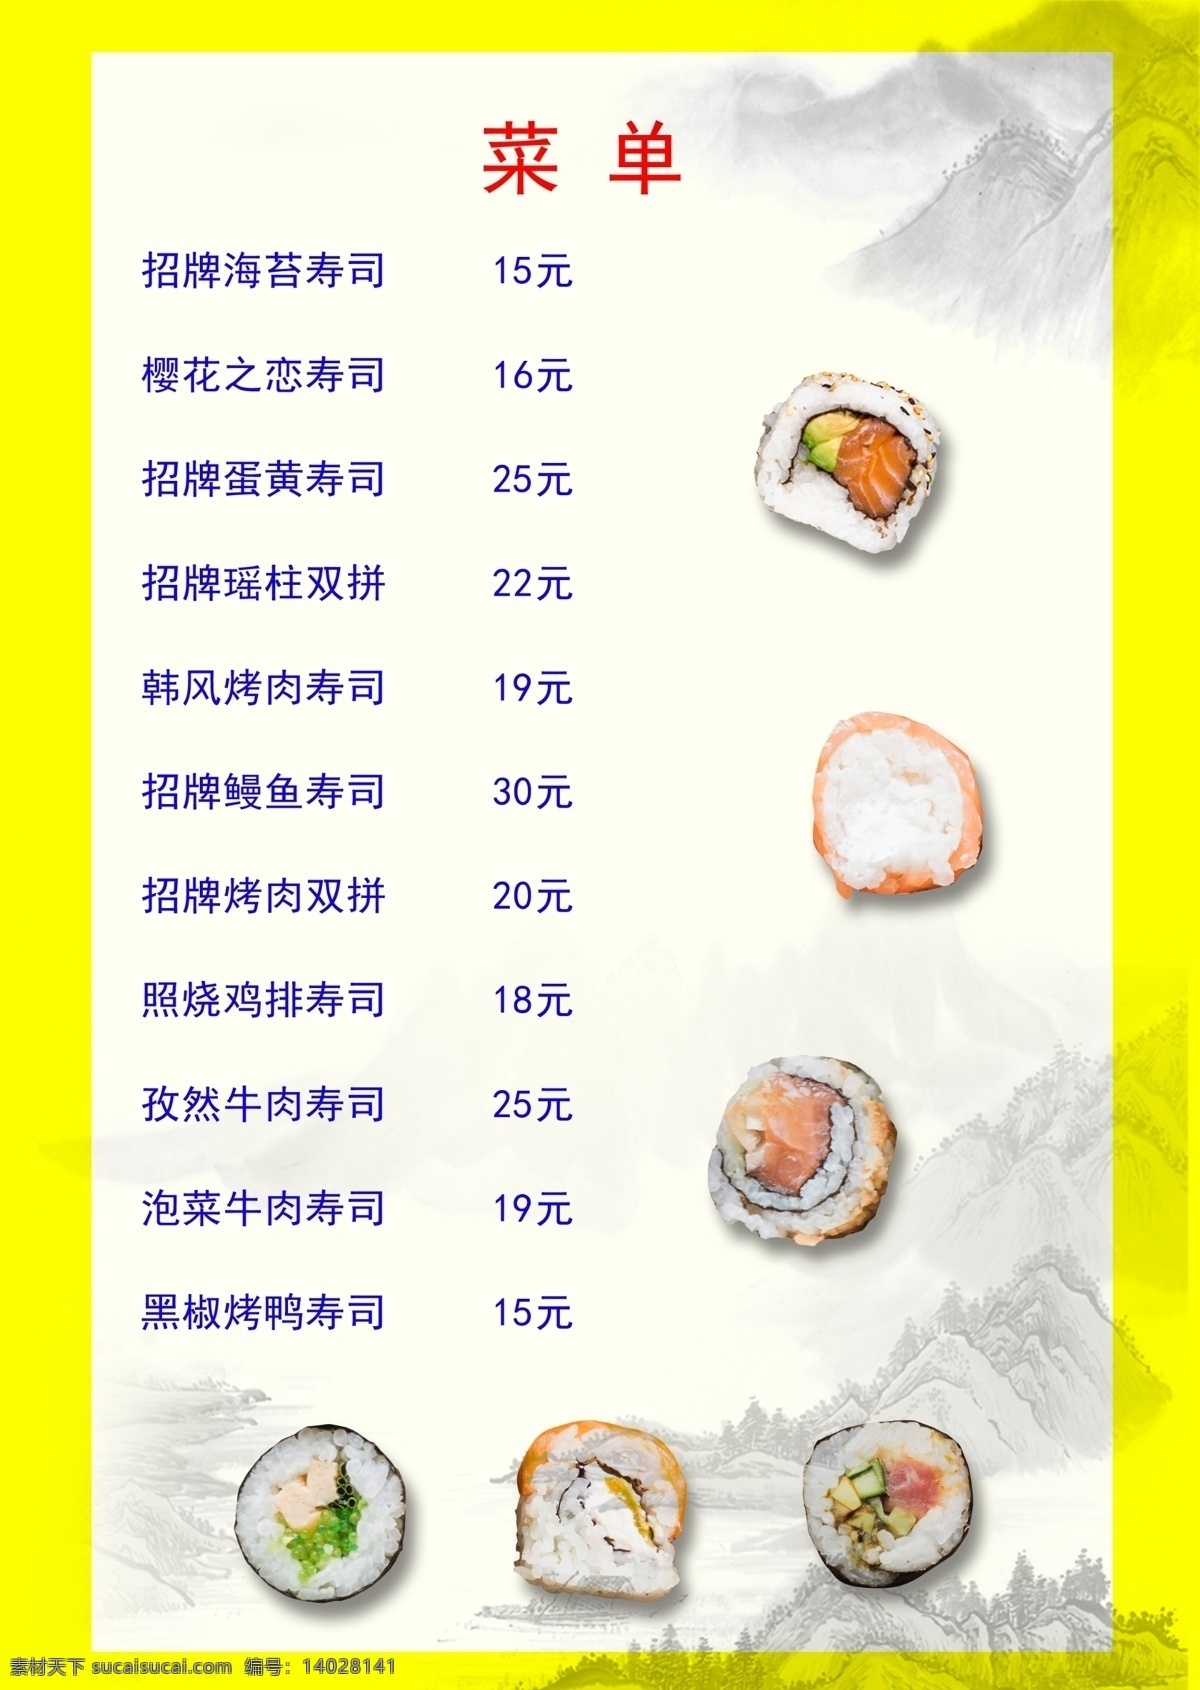 寿司菜单 寿司 菜单 cs5 黄色 底纹 菜单菜谱